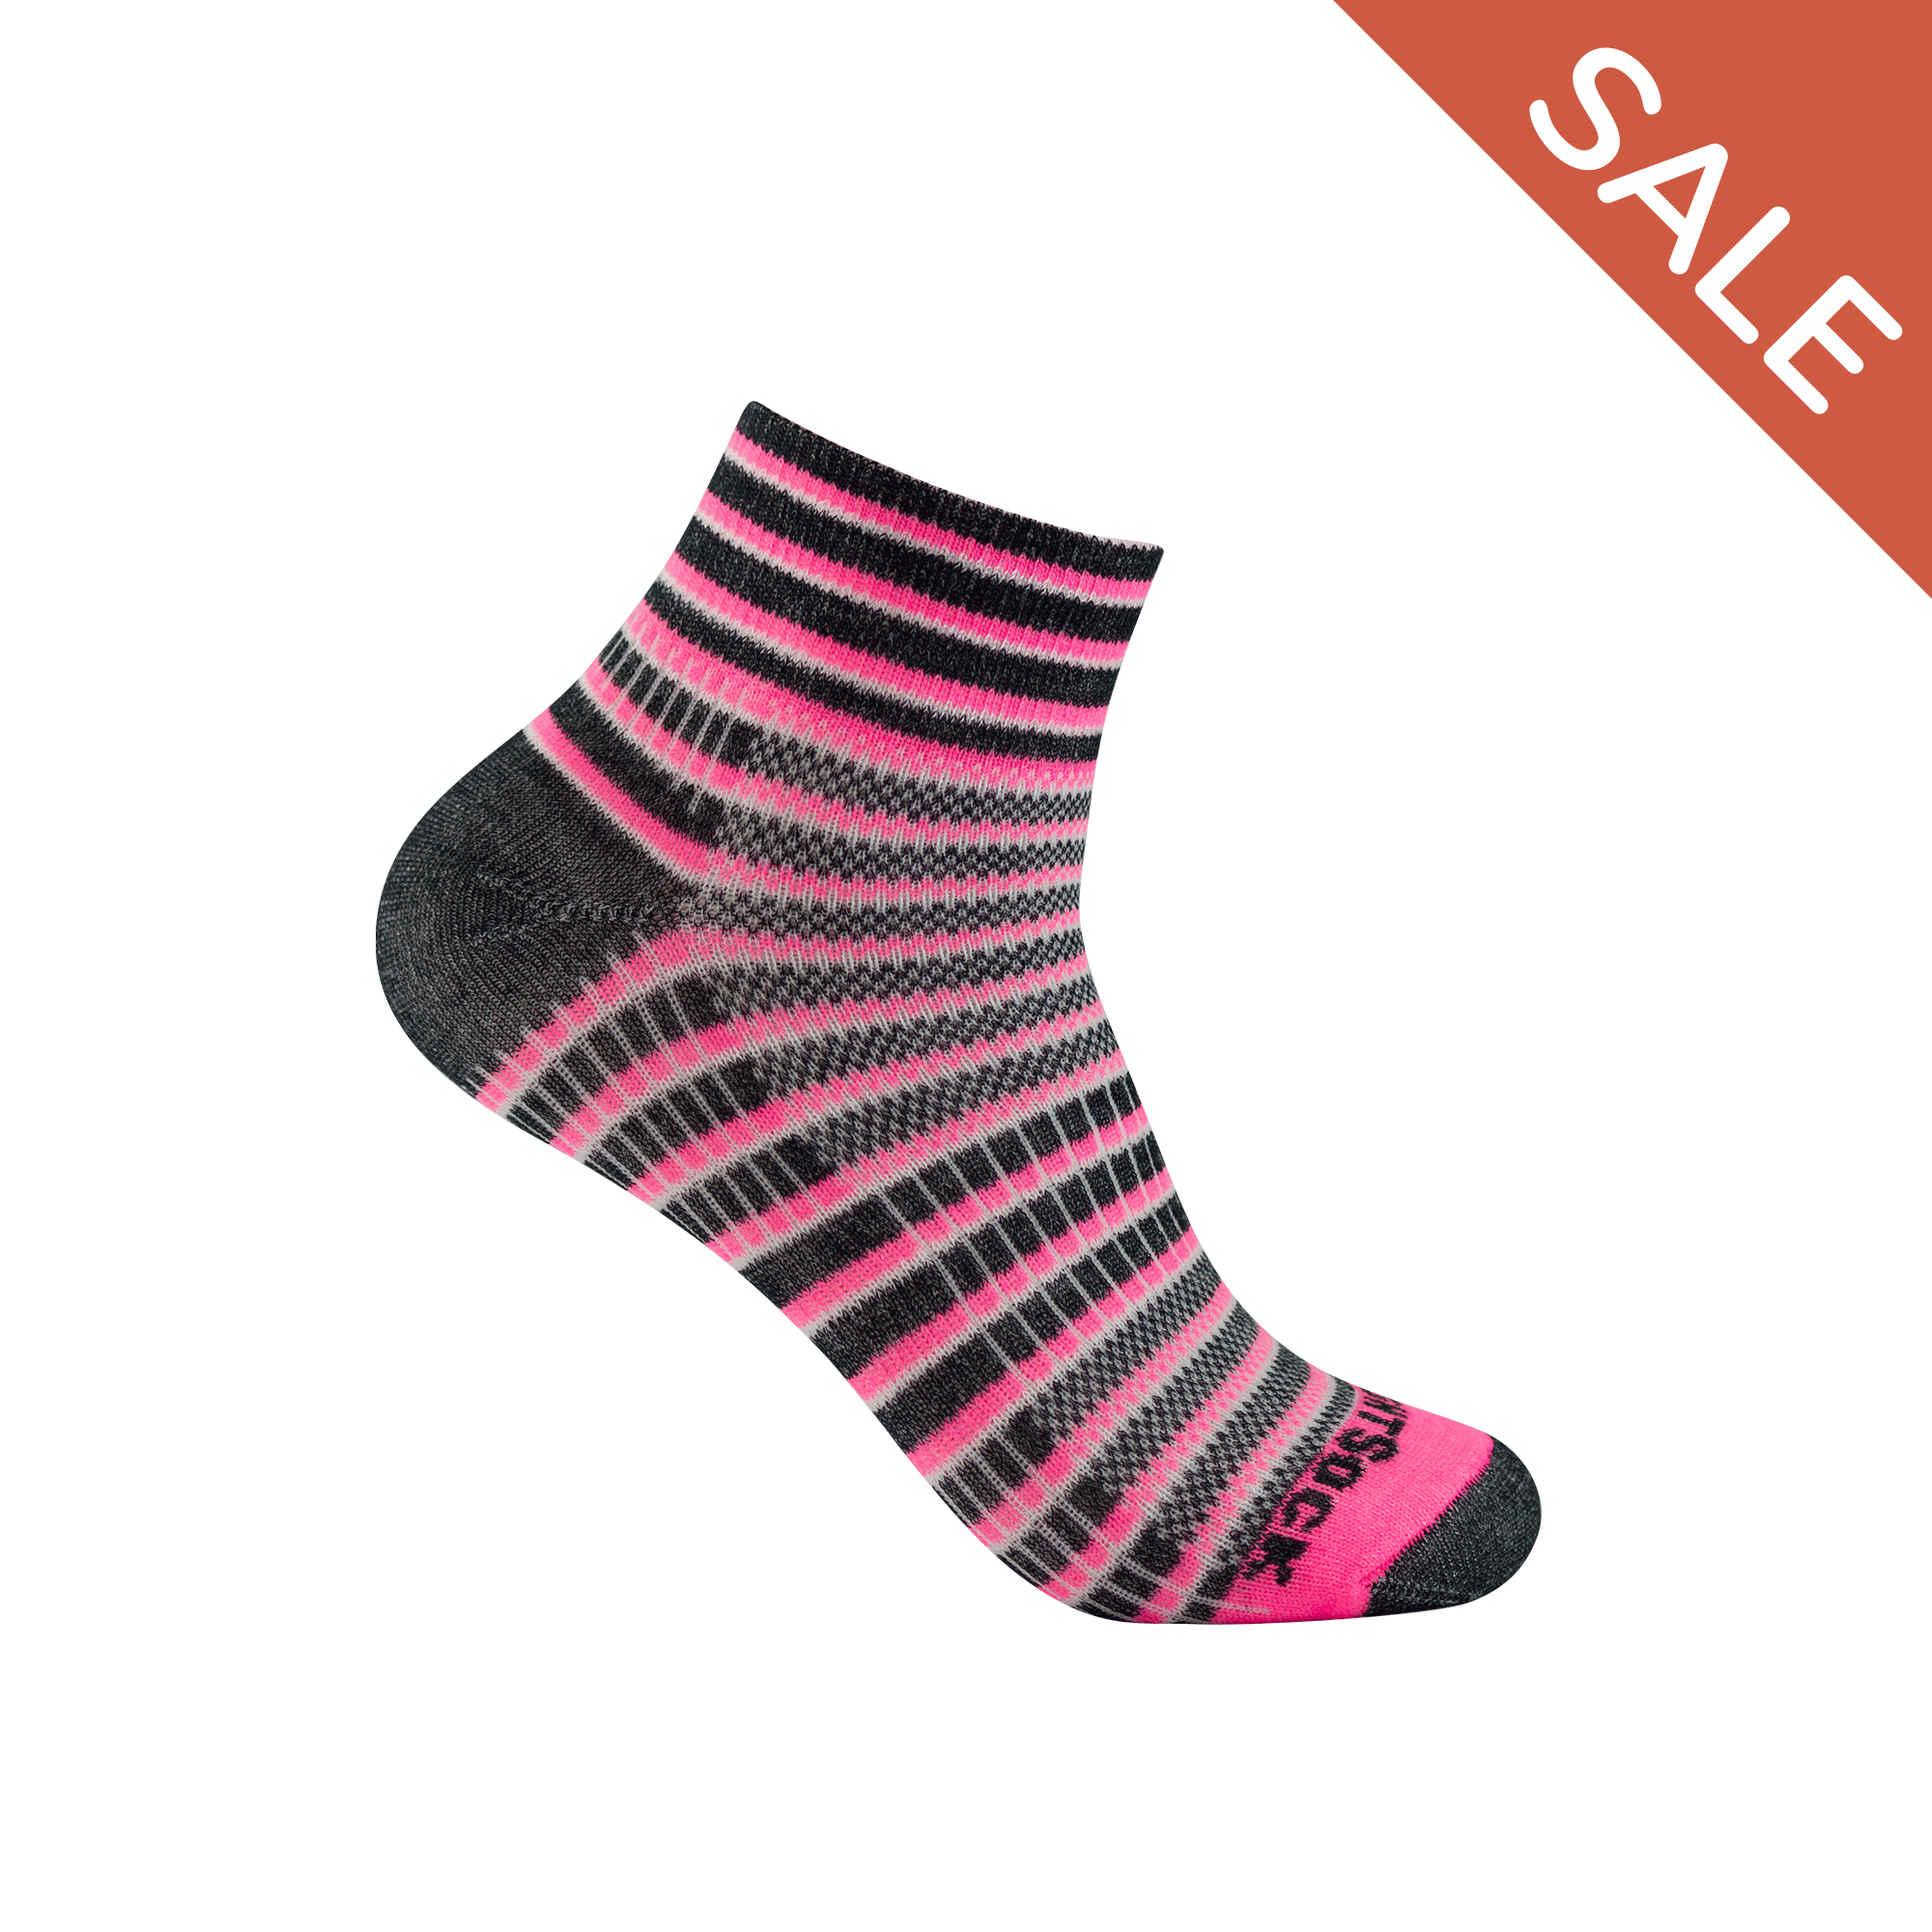 #farbe_pink-black-white | WRIGHTSOCK doppellagige Anti-Blasen-Socken - COOLMESH II Quarter - pink-black-white